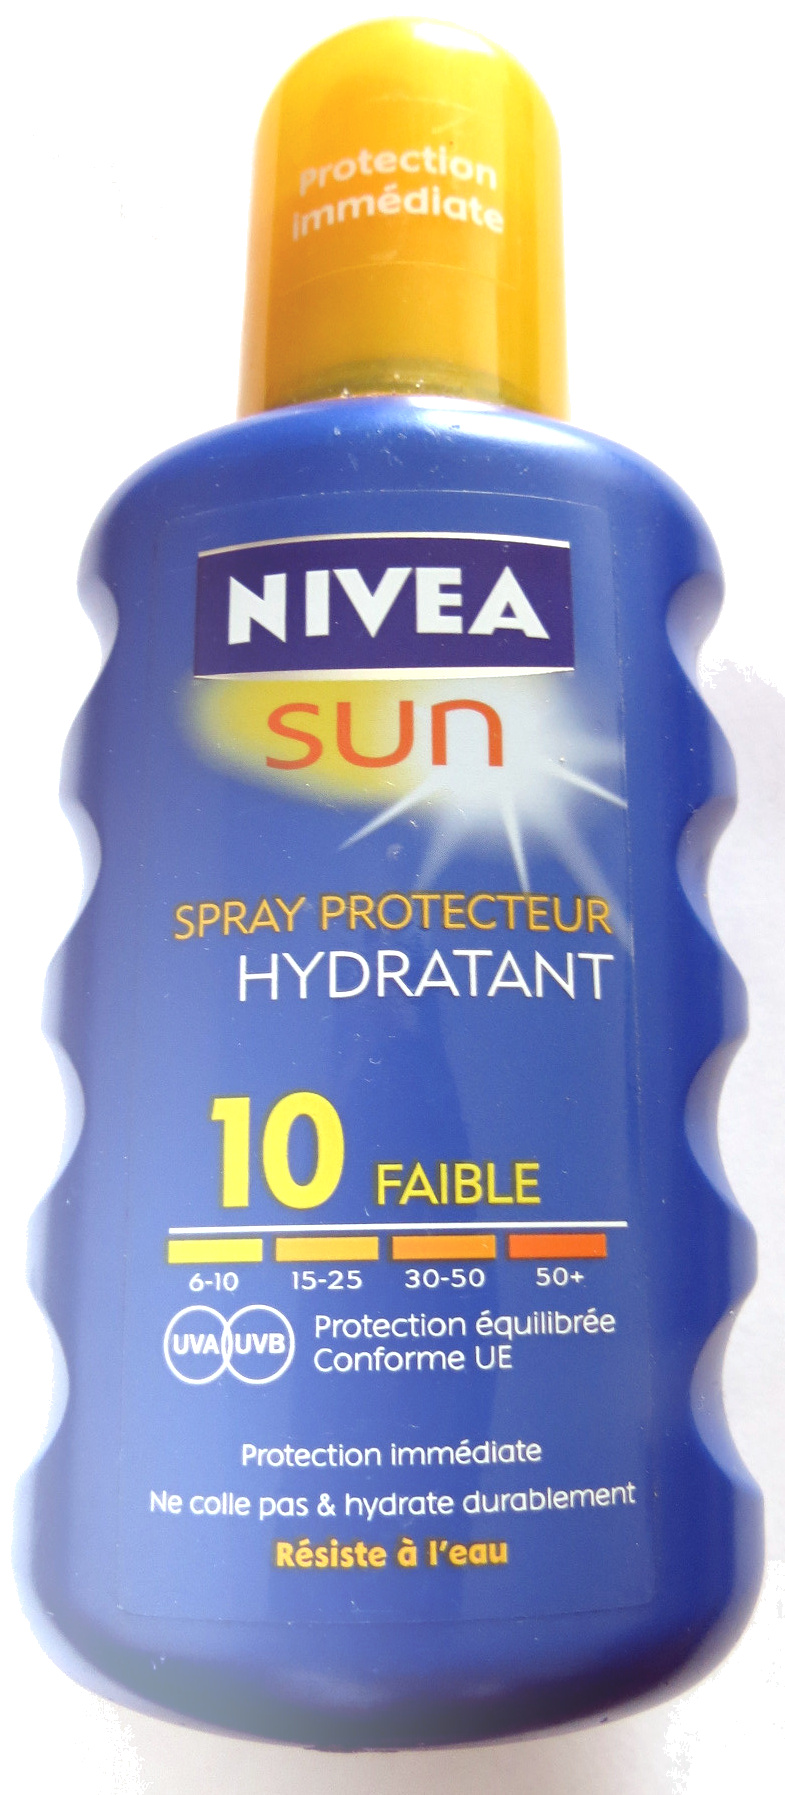 Spray protecteur hydratant 10 faible - Product - fr